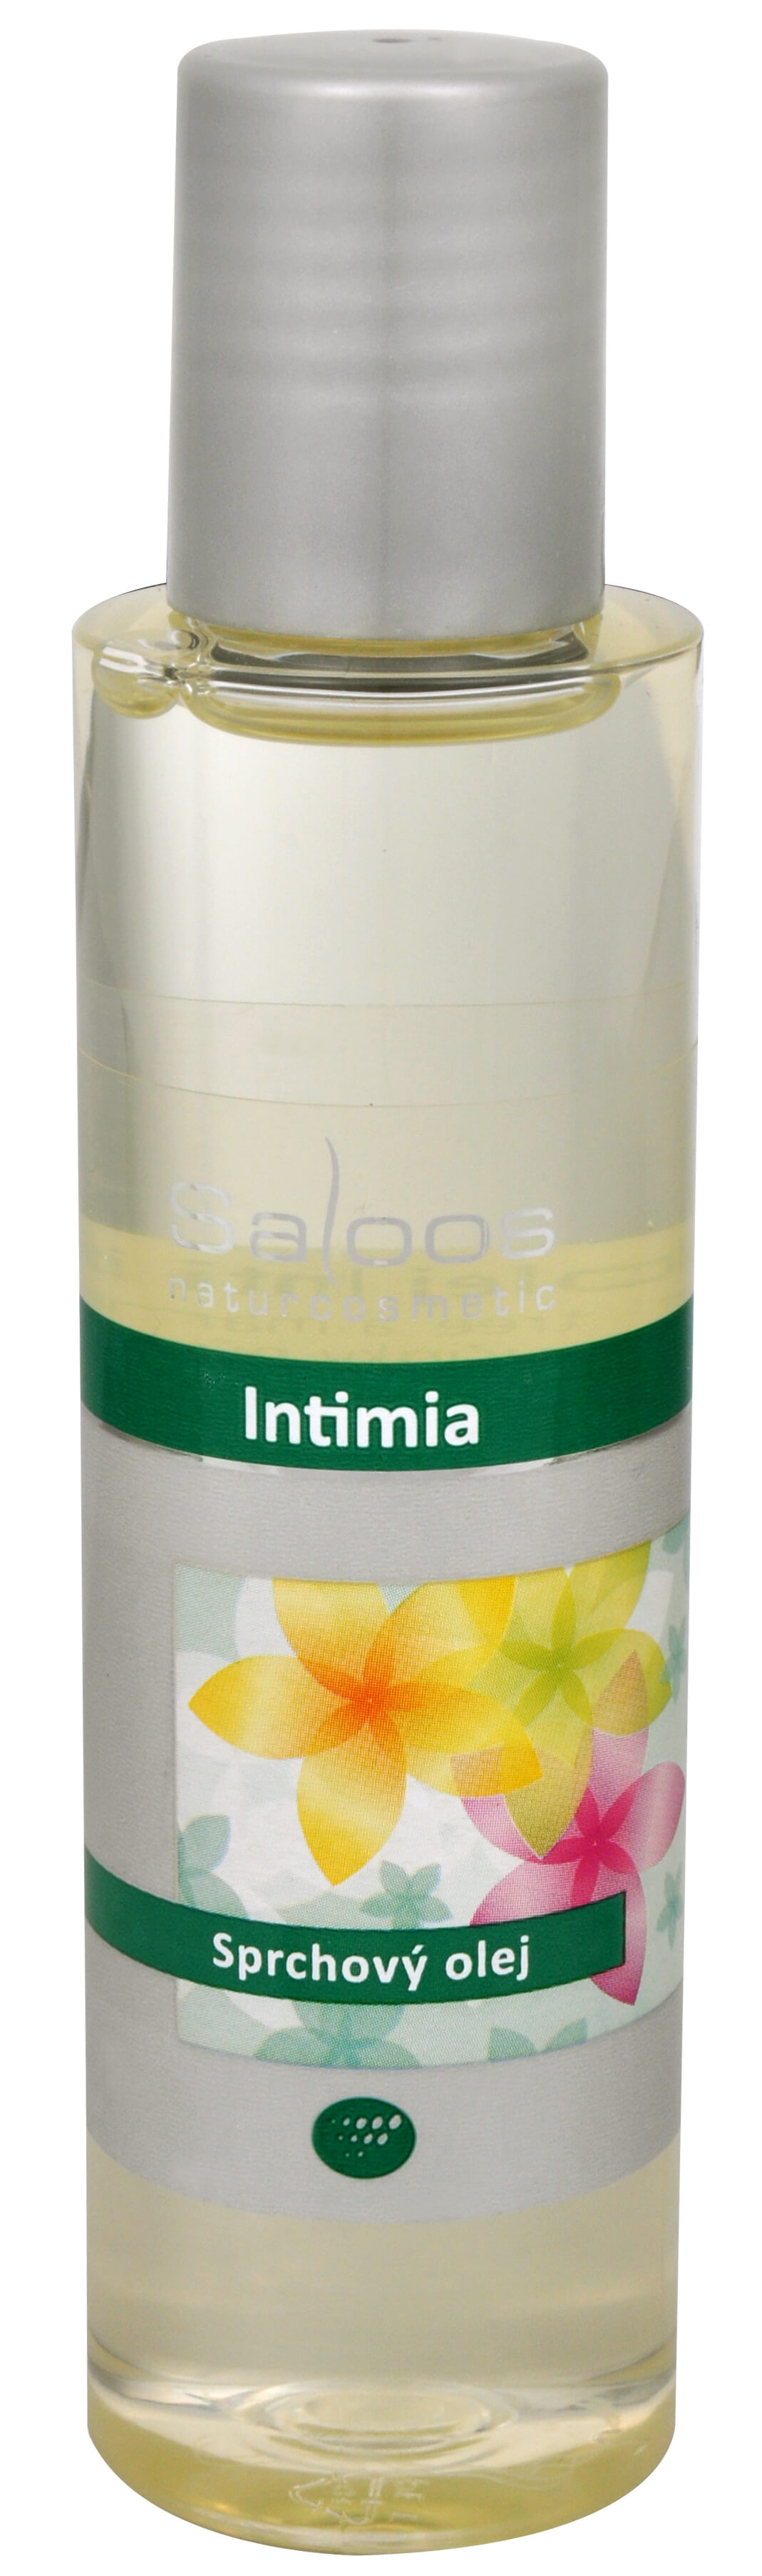 Zobrazit detail výrobku Saloos Sprchový olej - Intimia 250 ml